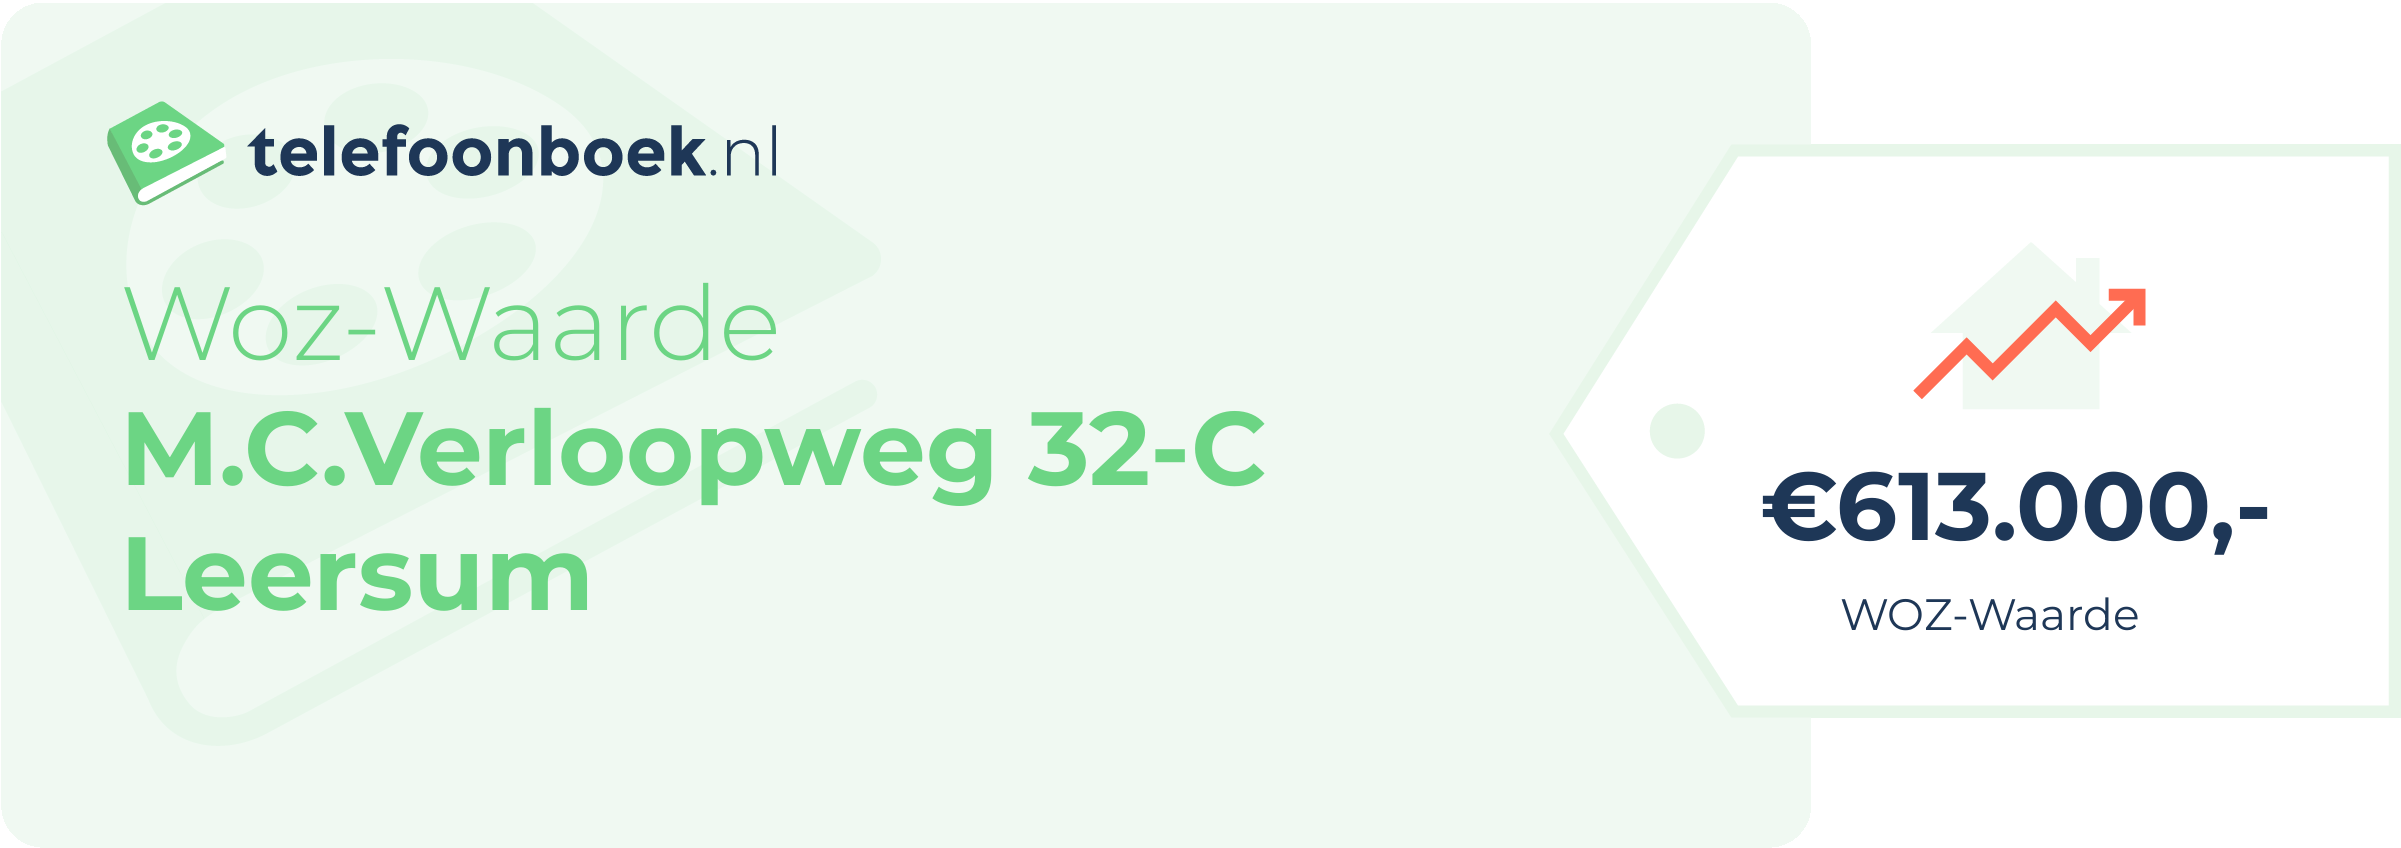 WOZ-waarde M.C.Verloopweg 32-C Leersum